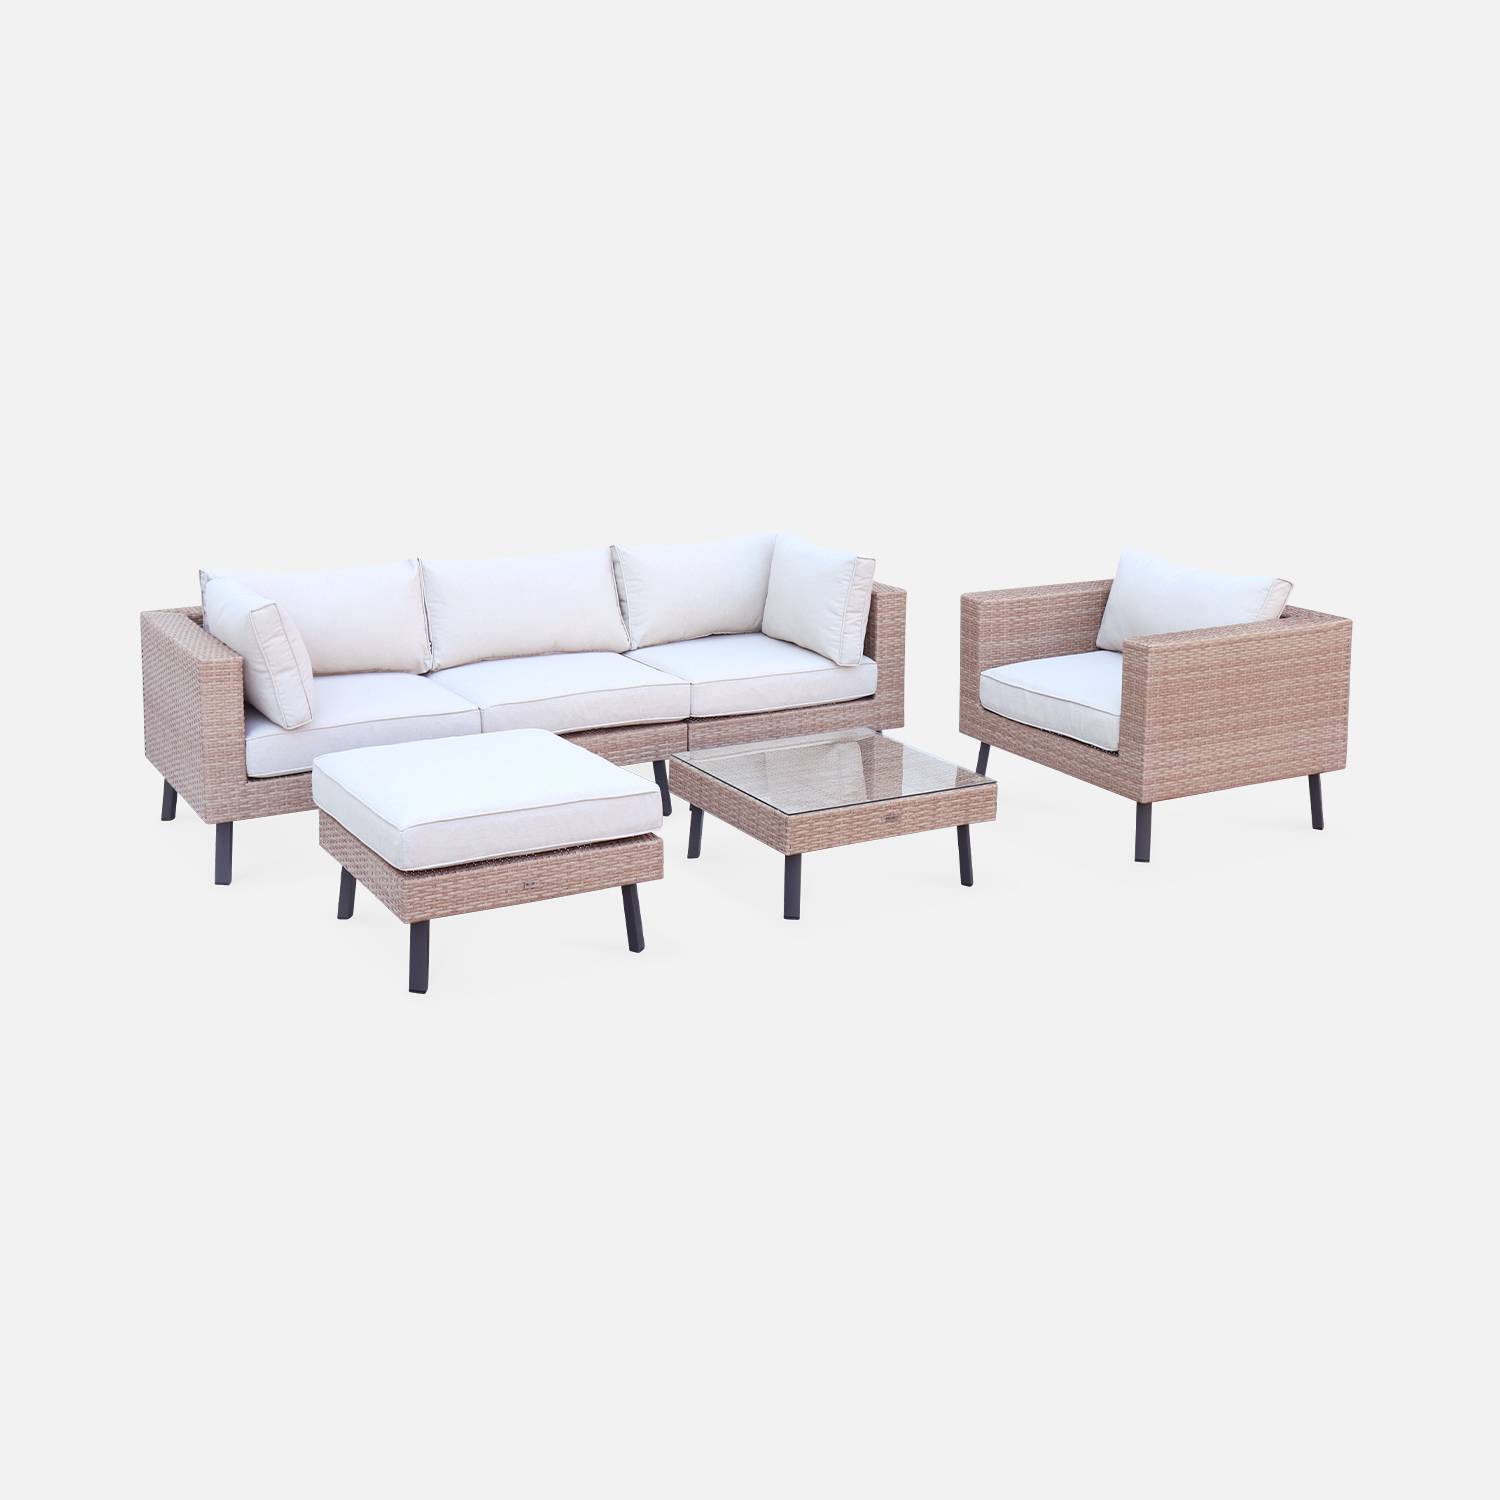 Set di mobili da giardino 5 posti in resina a tessitura piatta - Alba - resina beige e cuscini beige Photo3